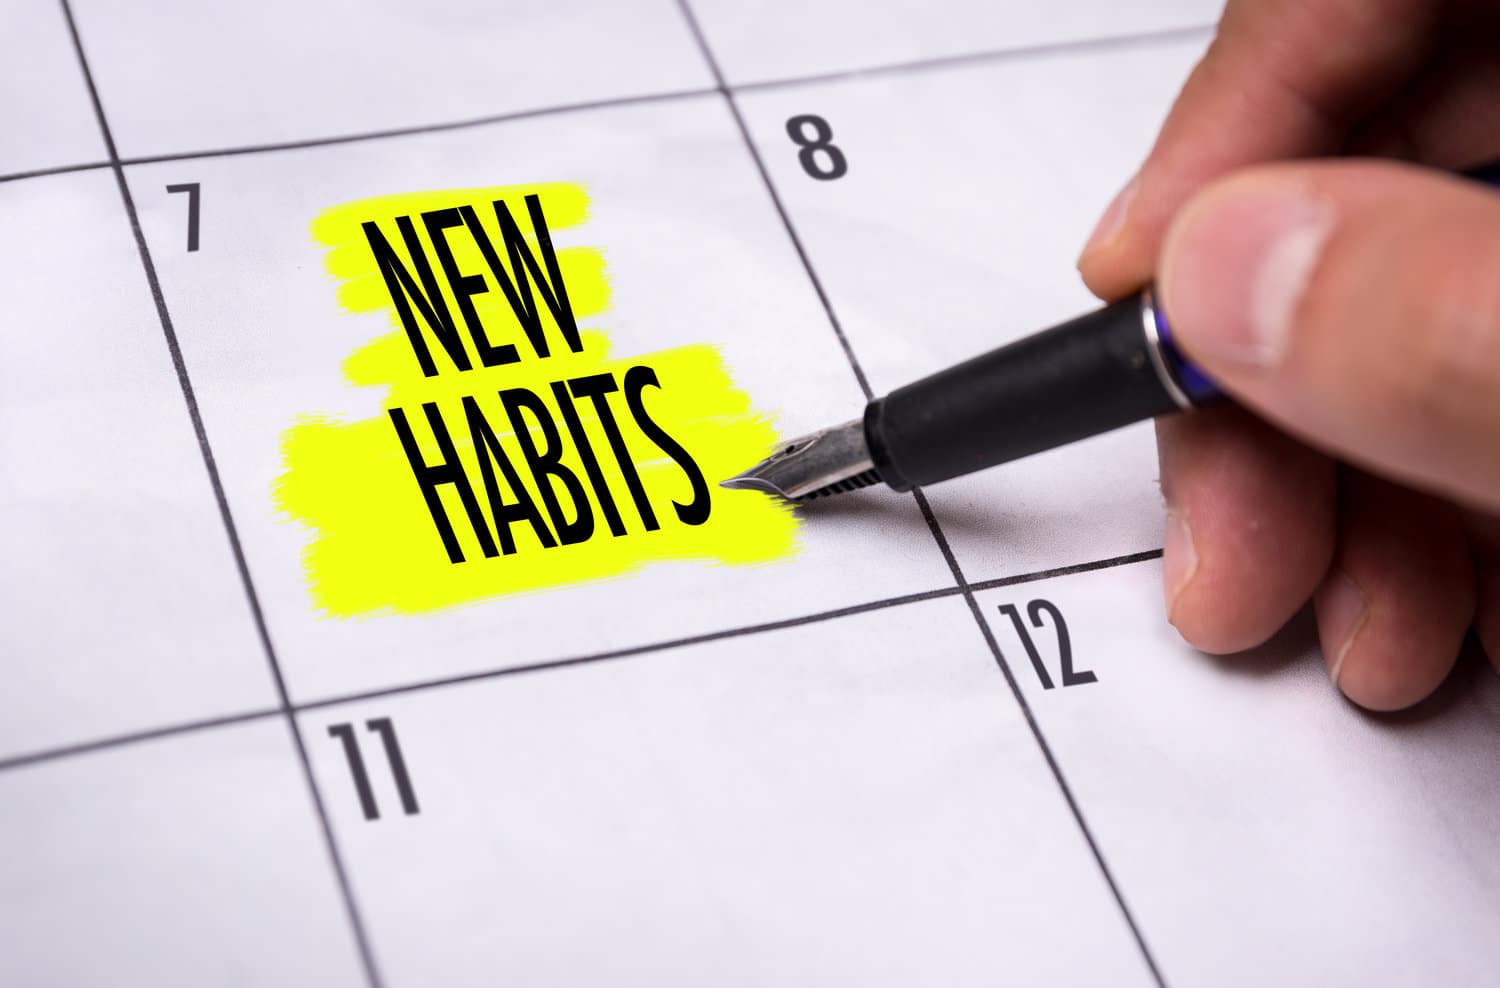 Get new healthier habits